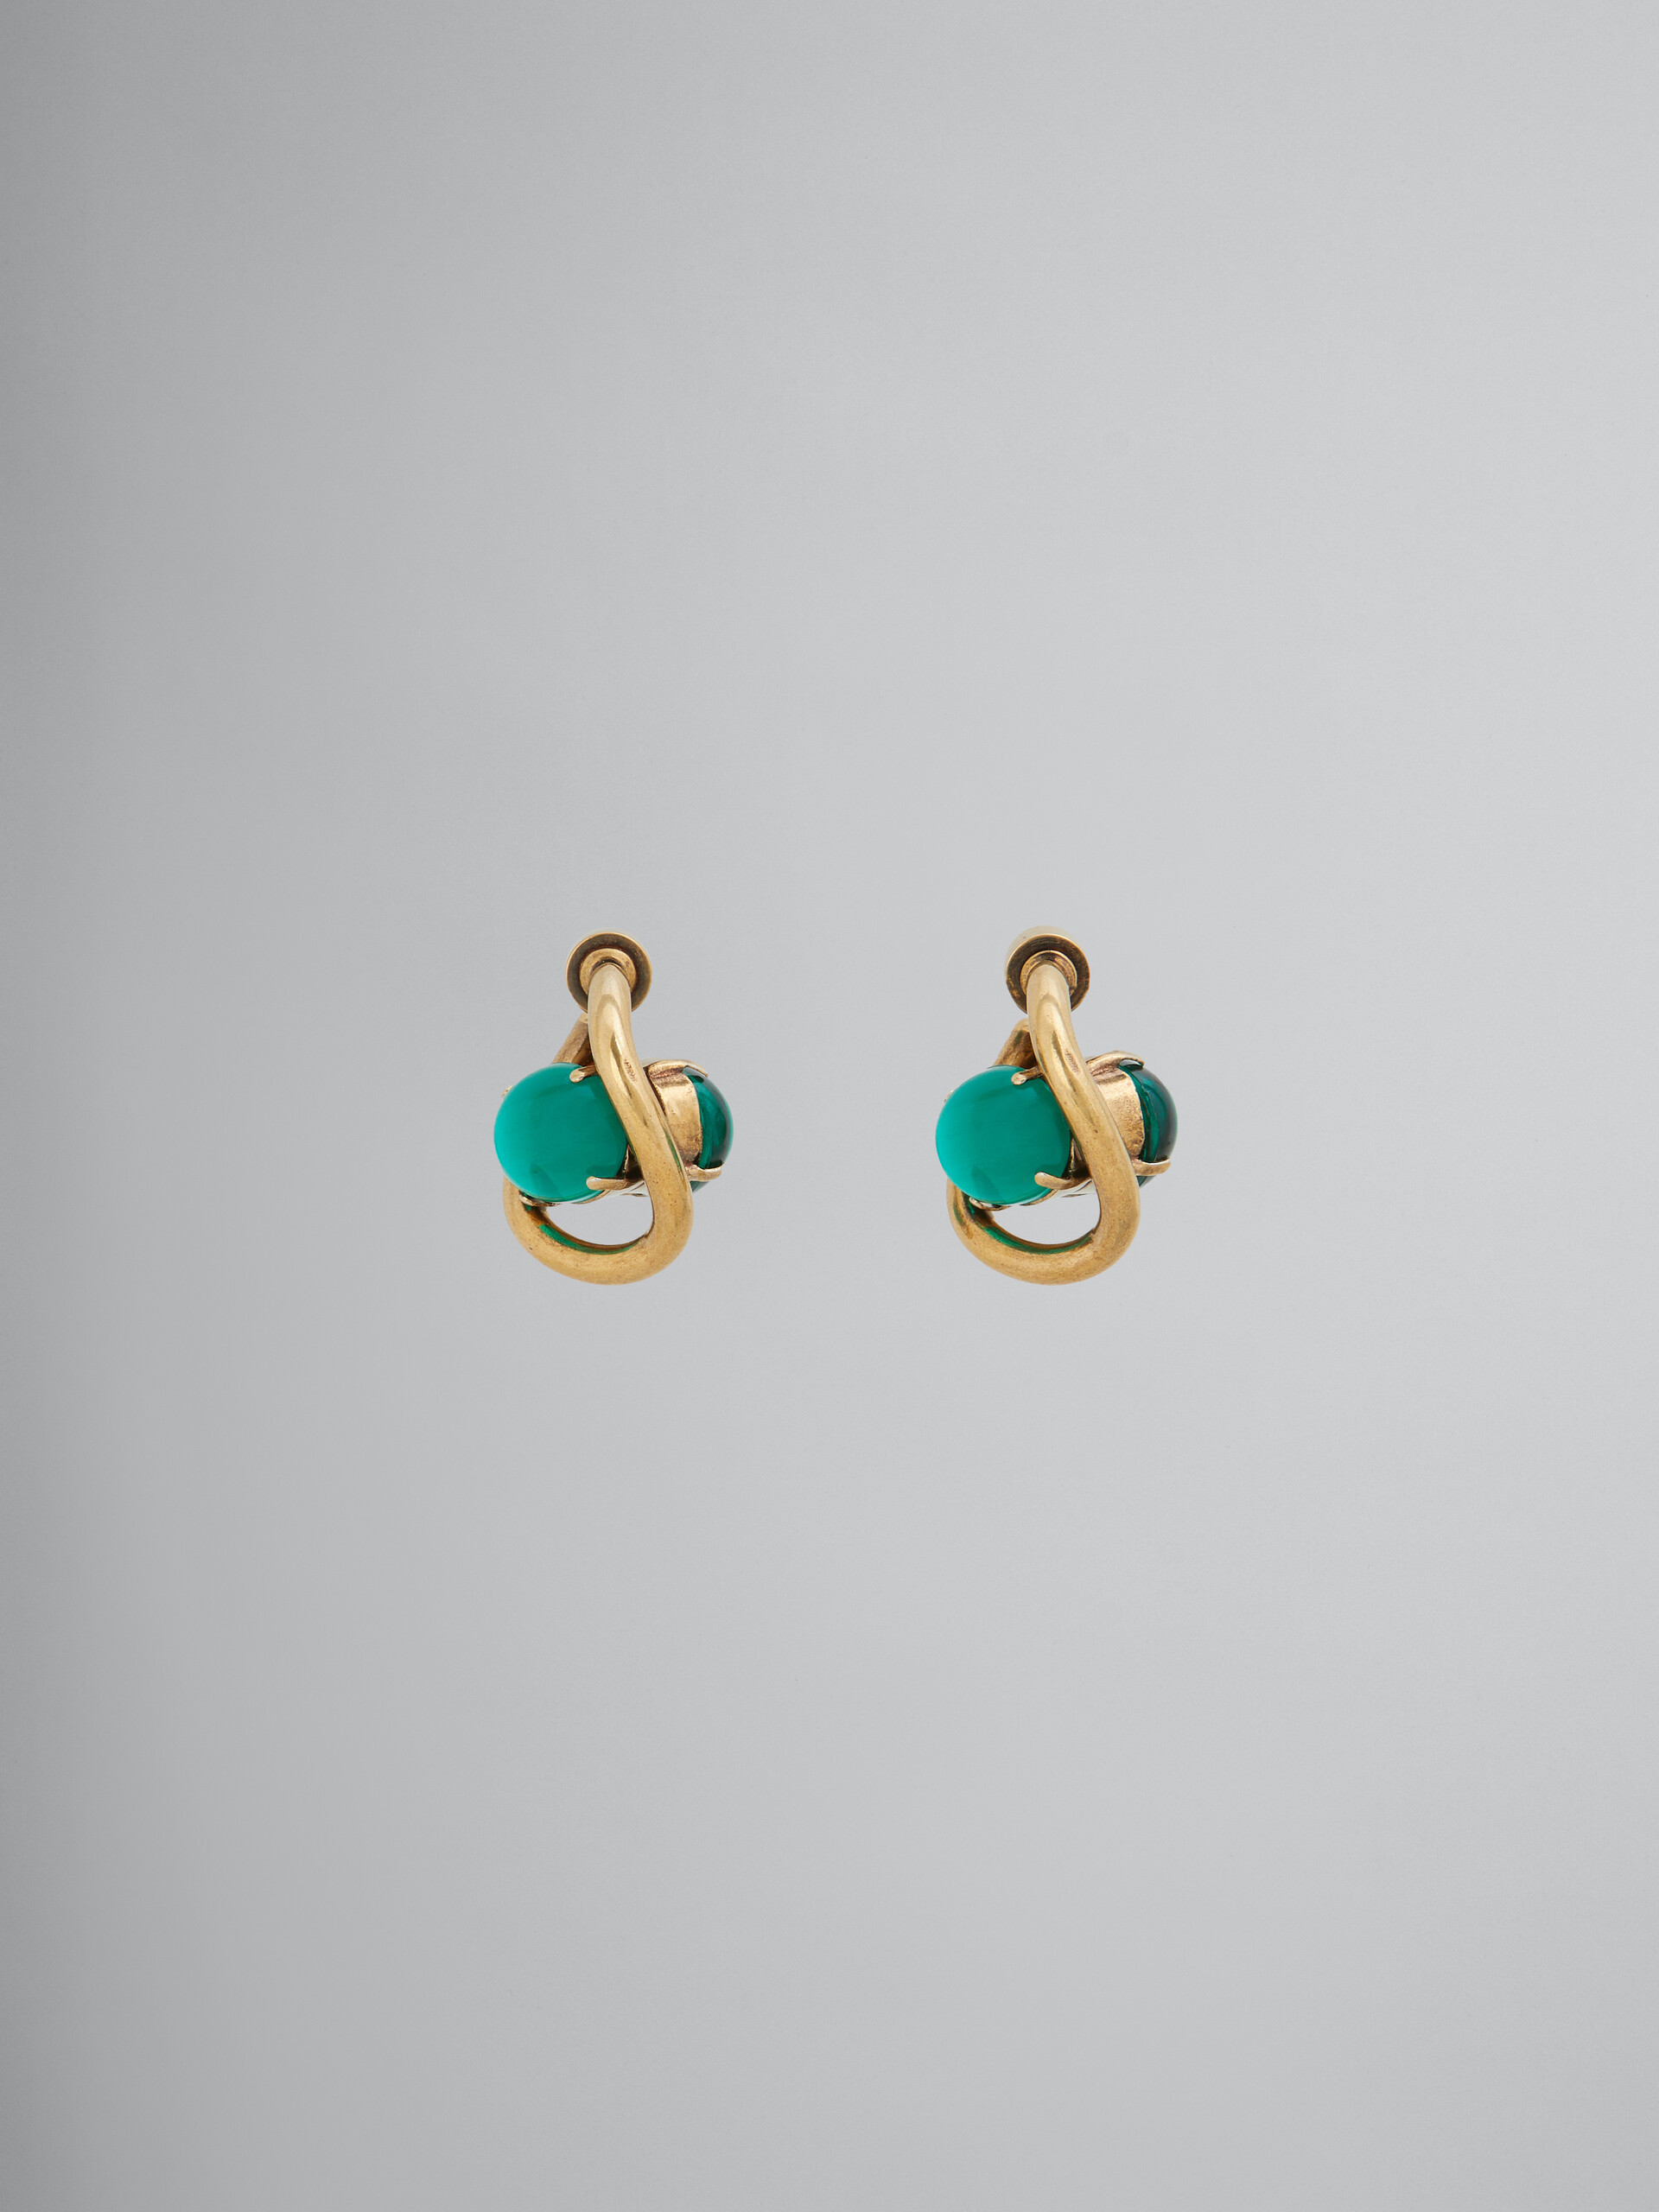 Twisted hoop earrings with resin eyes - Earrings - Image 1